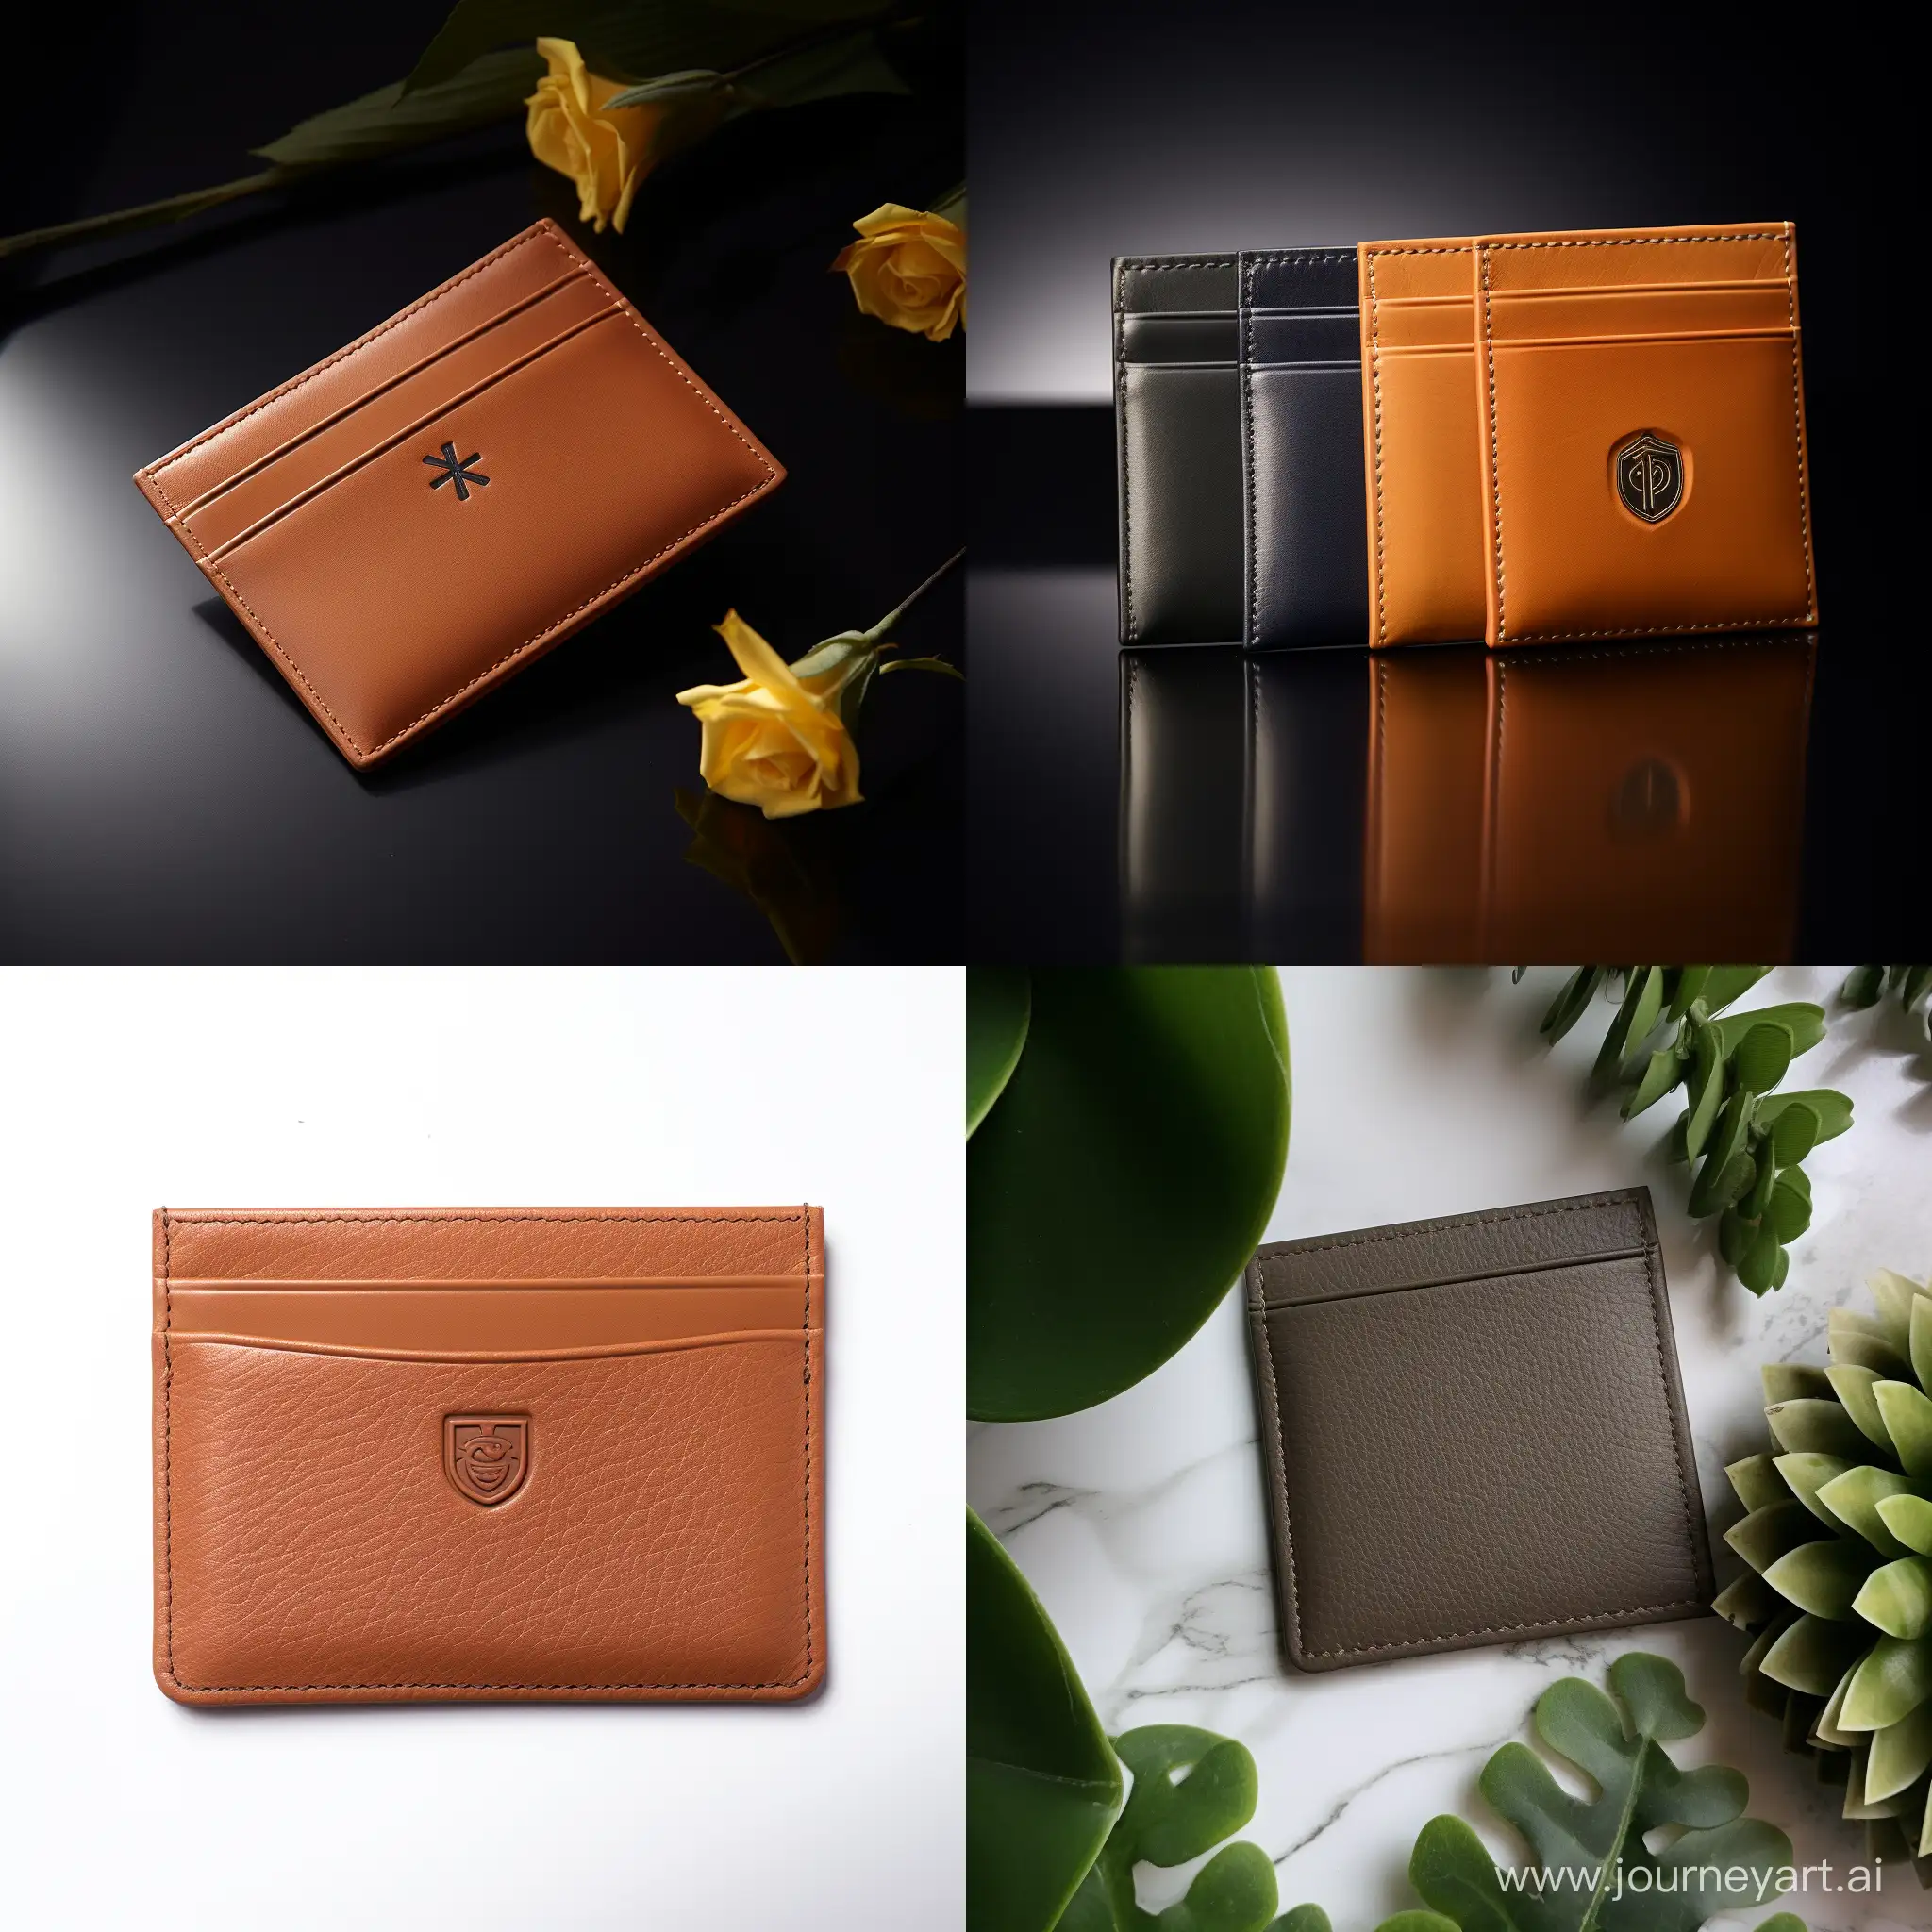 Elegant-Leather-Cardholder-with-Timeless-Design-and-Superior-Craftsmanship